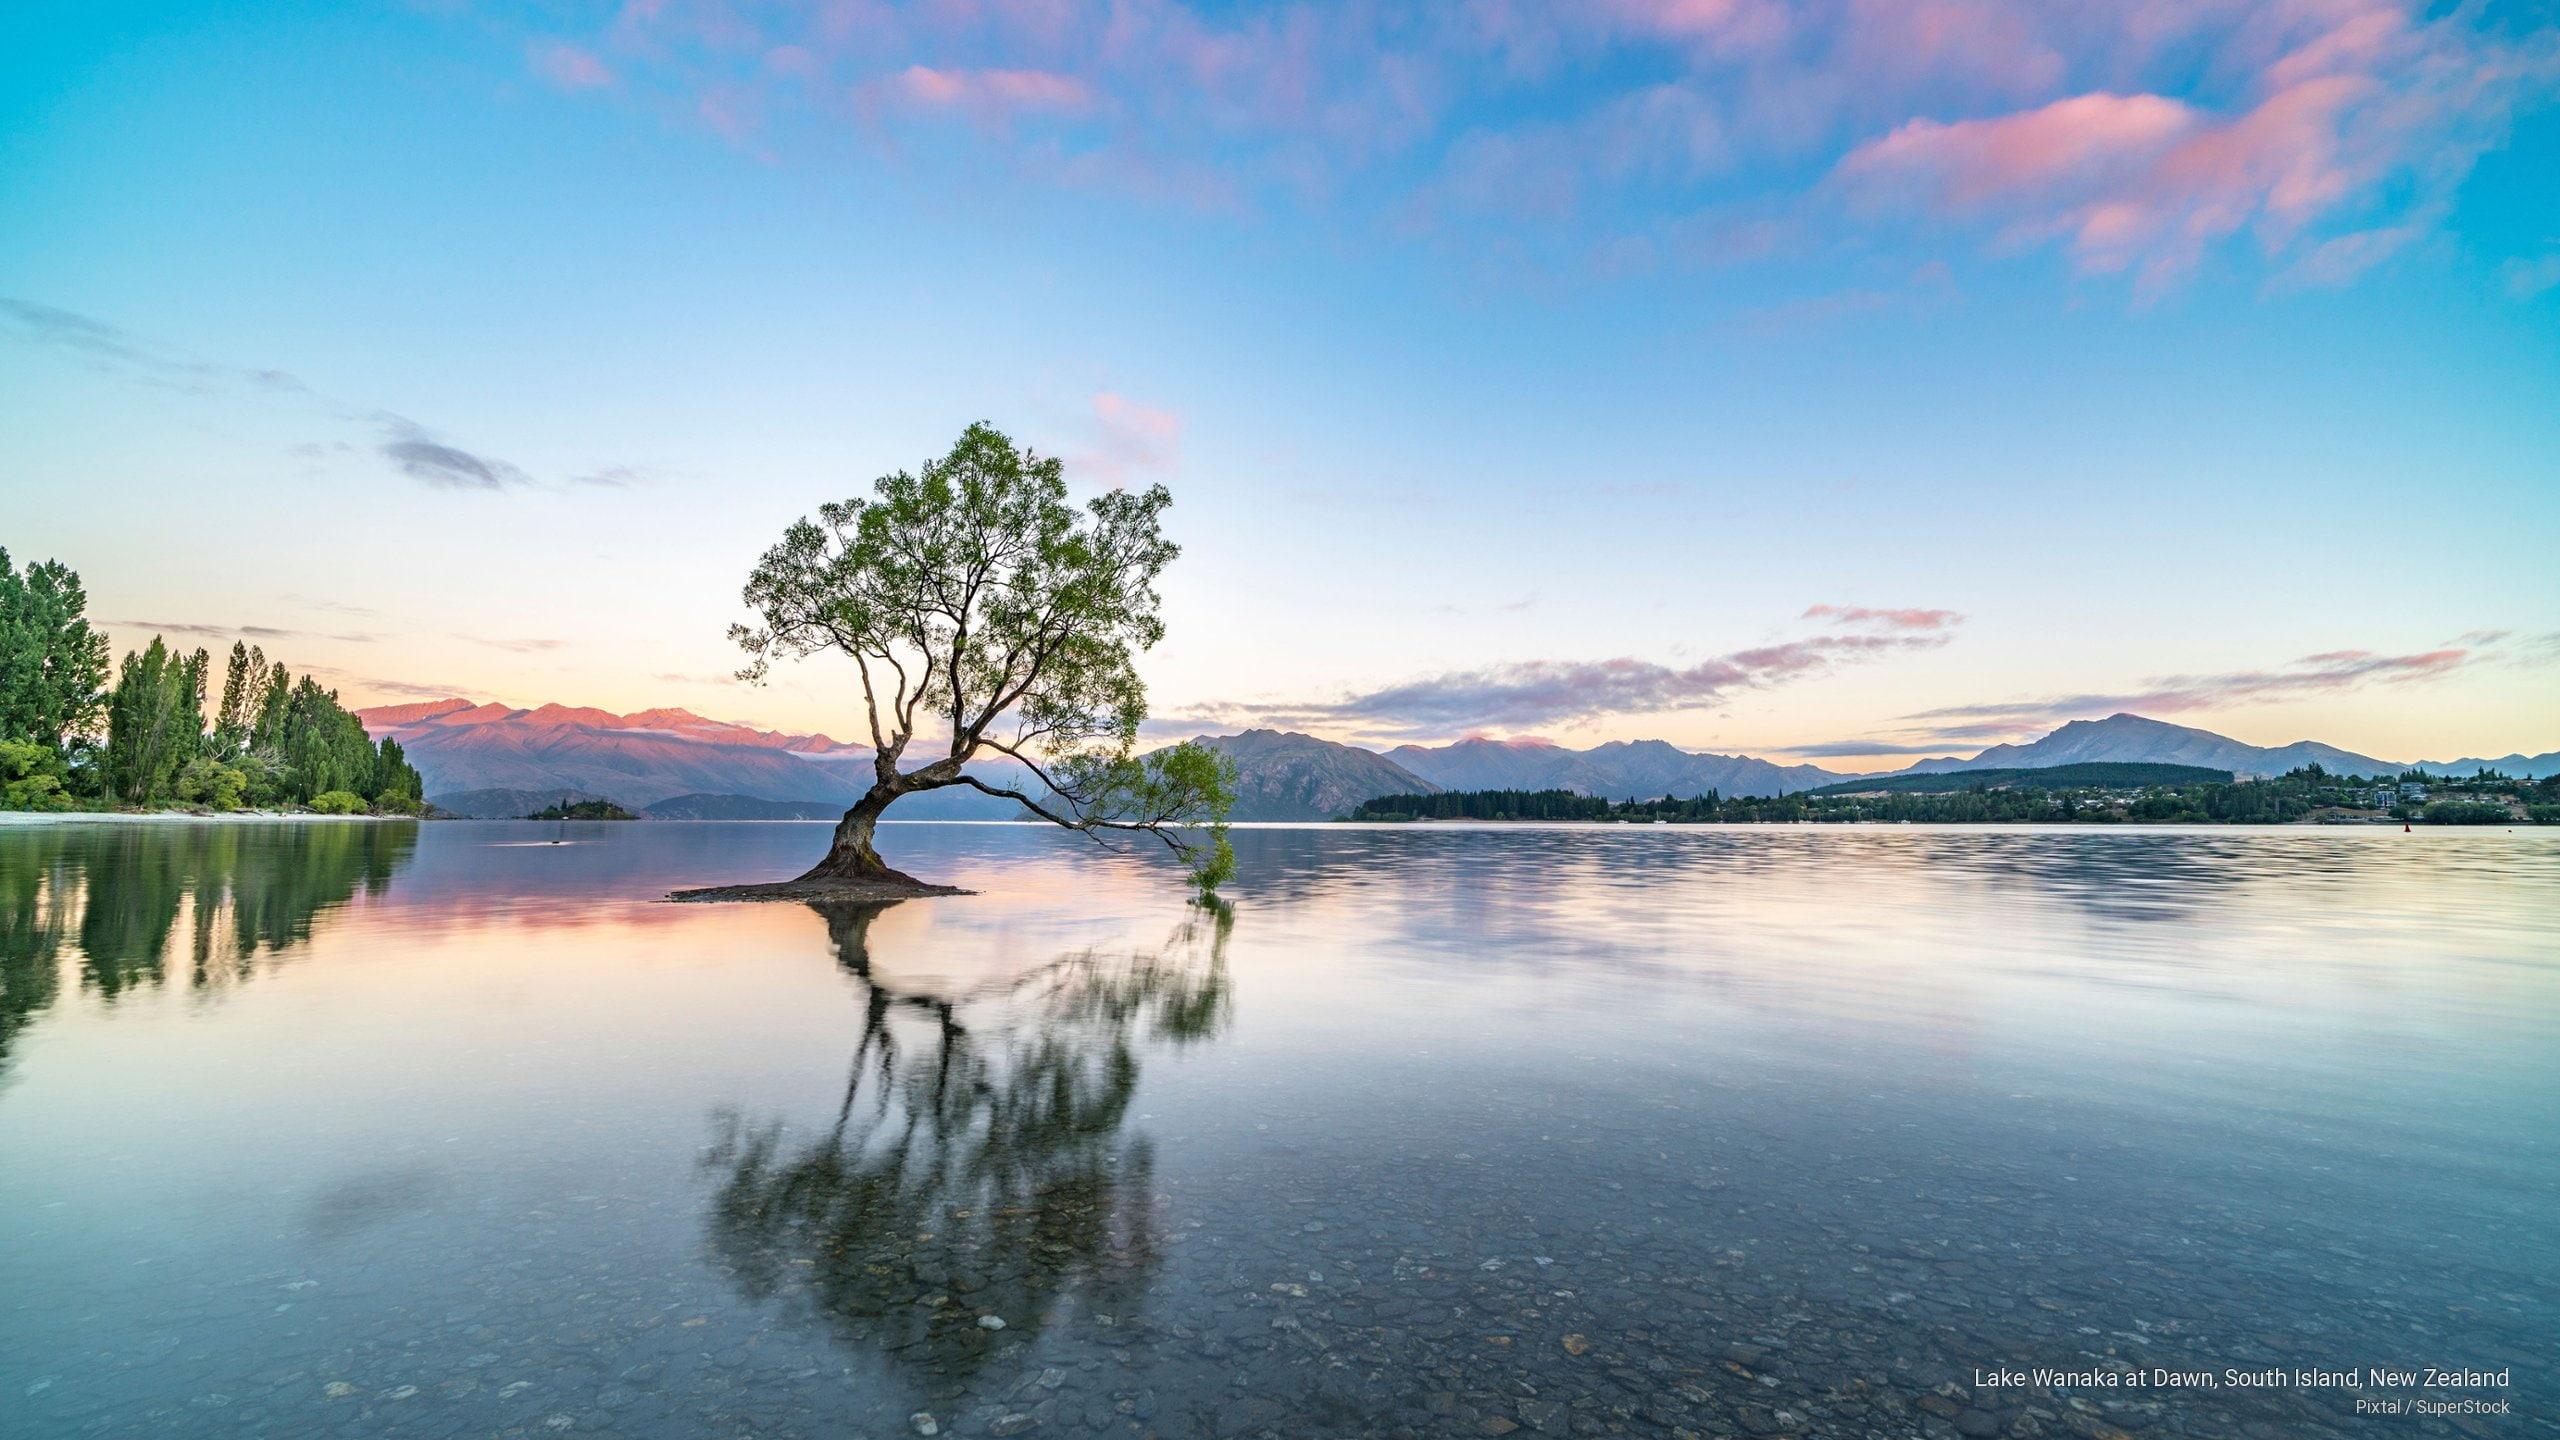 HD wallpaper: Lake Wanaka at Dawn, South Island, New Zealand